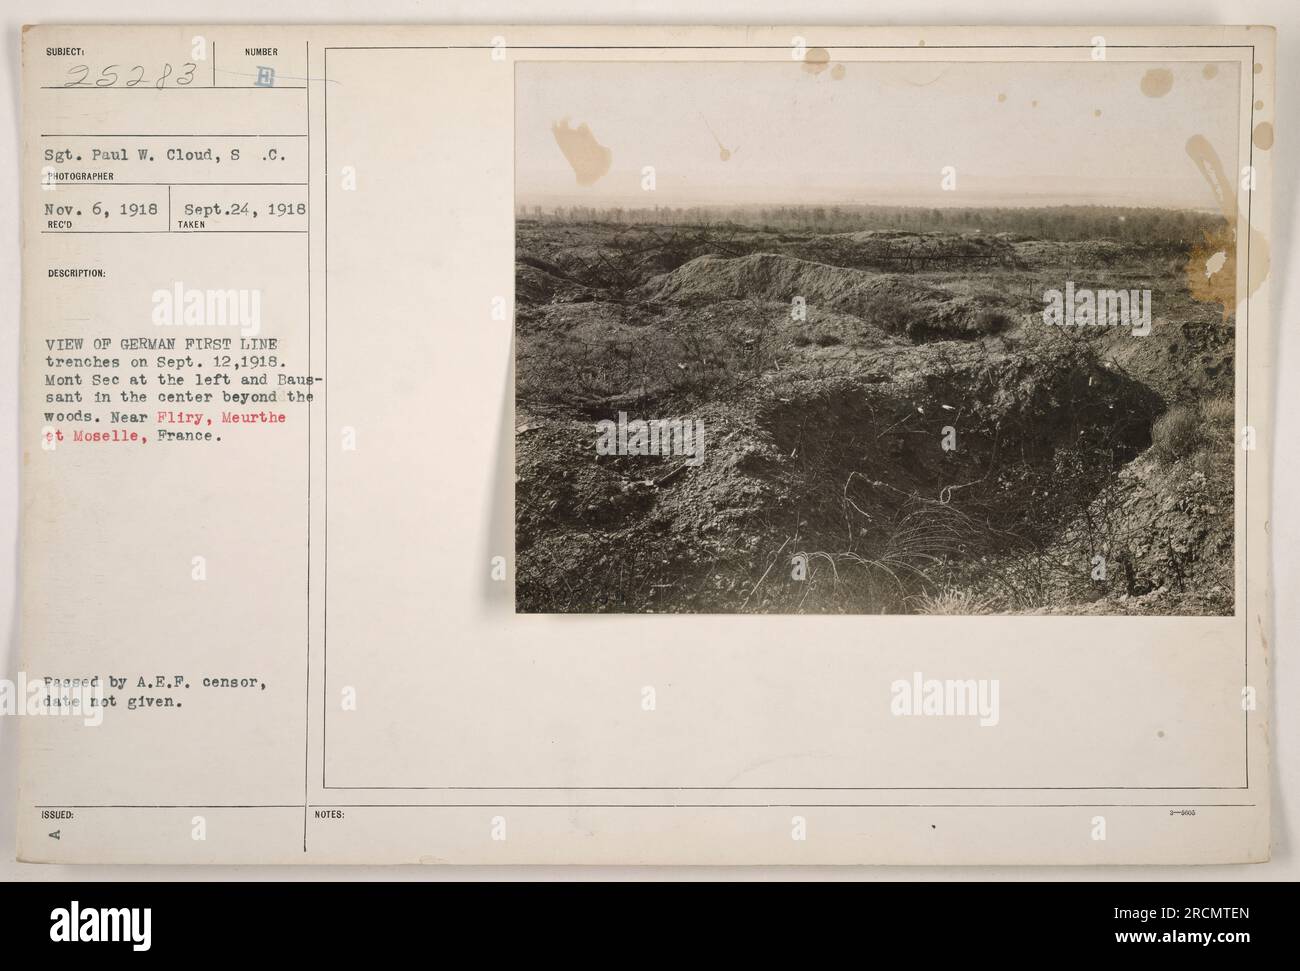 Sergeant Paul W. Cloud hat dieses Foto am 12. September 1918 aufgenommen. Es zeigt die deutschen Grabengräben in der Nähe von Fliry, Meurthe und Moselle, Frankreich. Auf dem Bild ist der Mont See auf der linken Seite sichtbar, mit Baus-sant in der Mitte hinter dem Wald. Dieses Foto wurde vom A.E.F.-Zensor genehmigt. Stockfoto